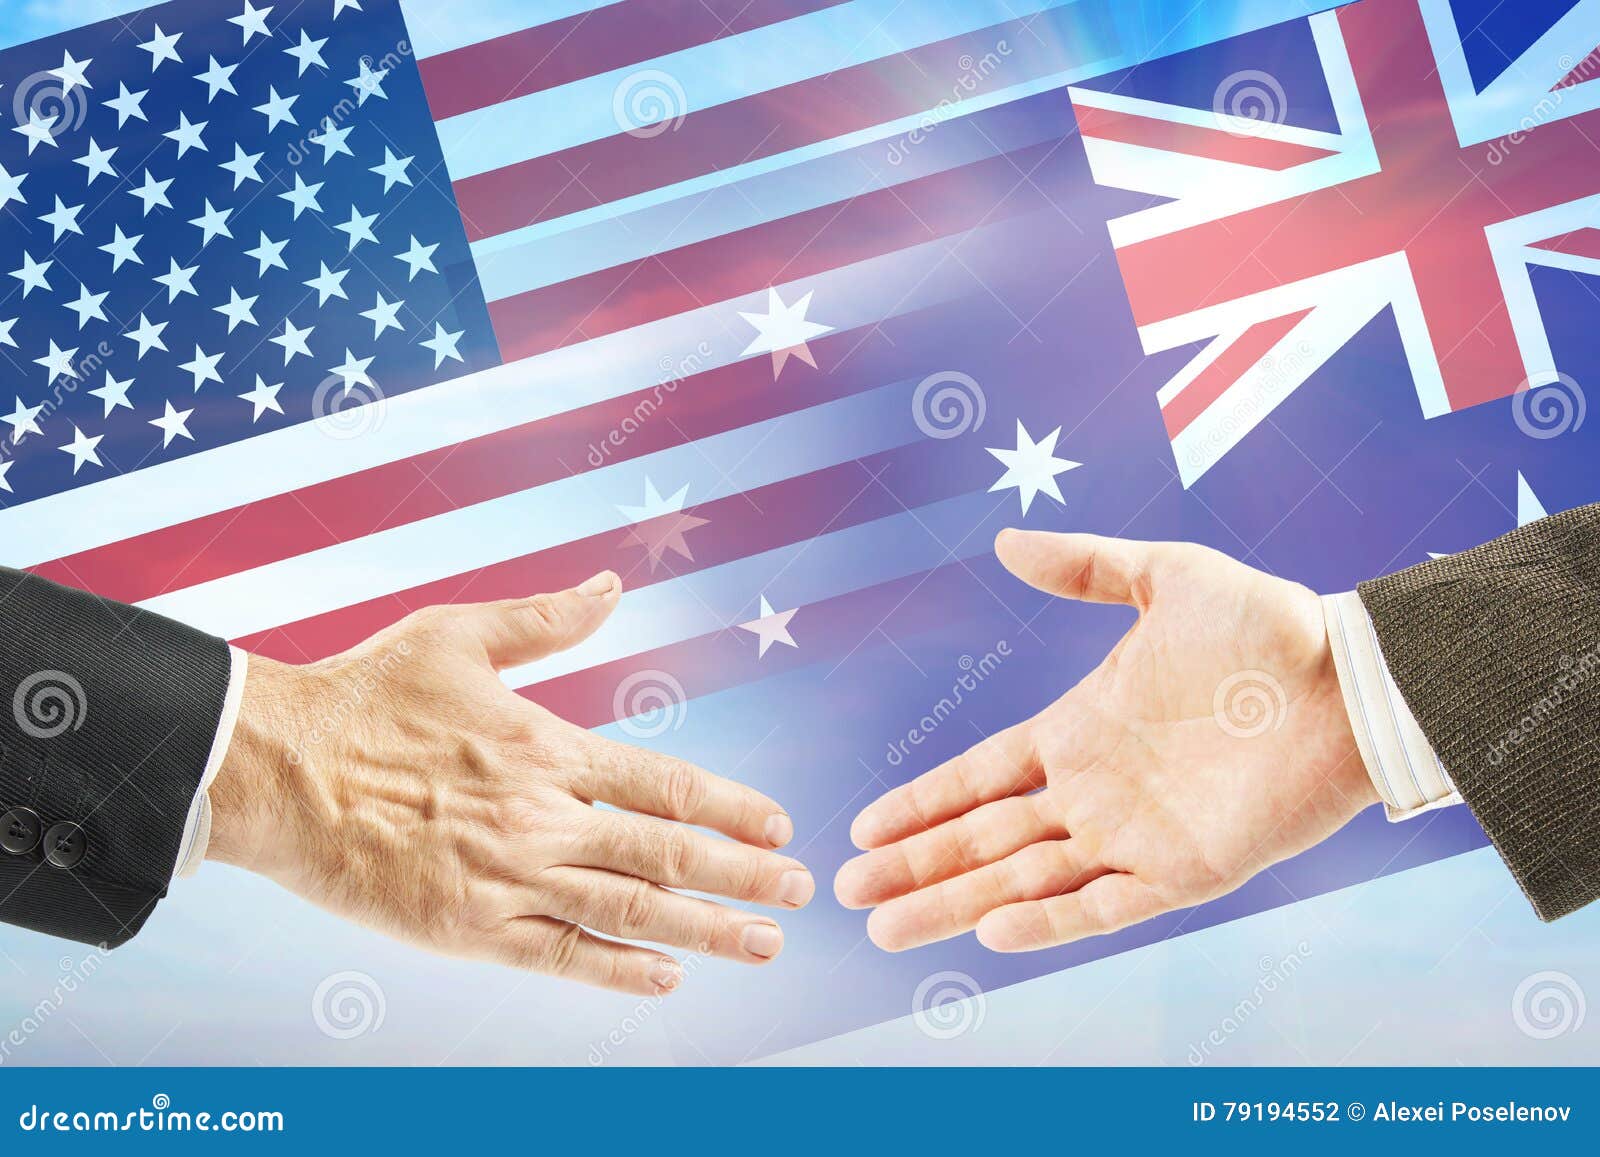 Дружественные отношения между странами. Международные отношения Австралии. США И Австралия отношения. Американское дружелюбие. Великобритания дружеские отношения.